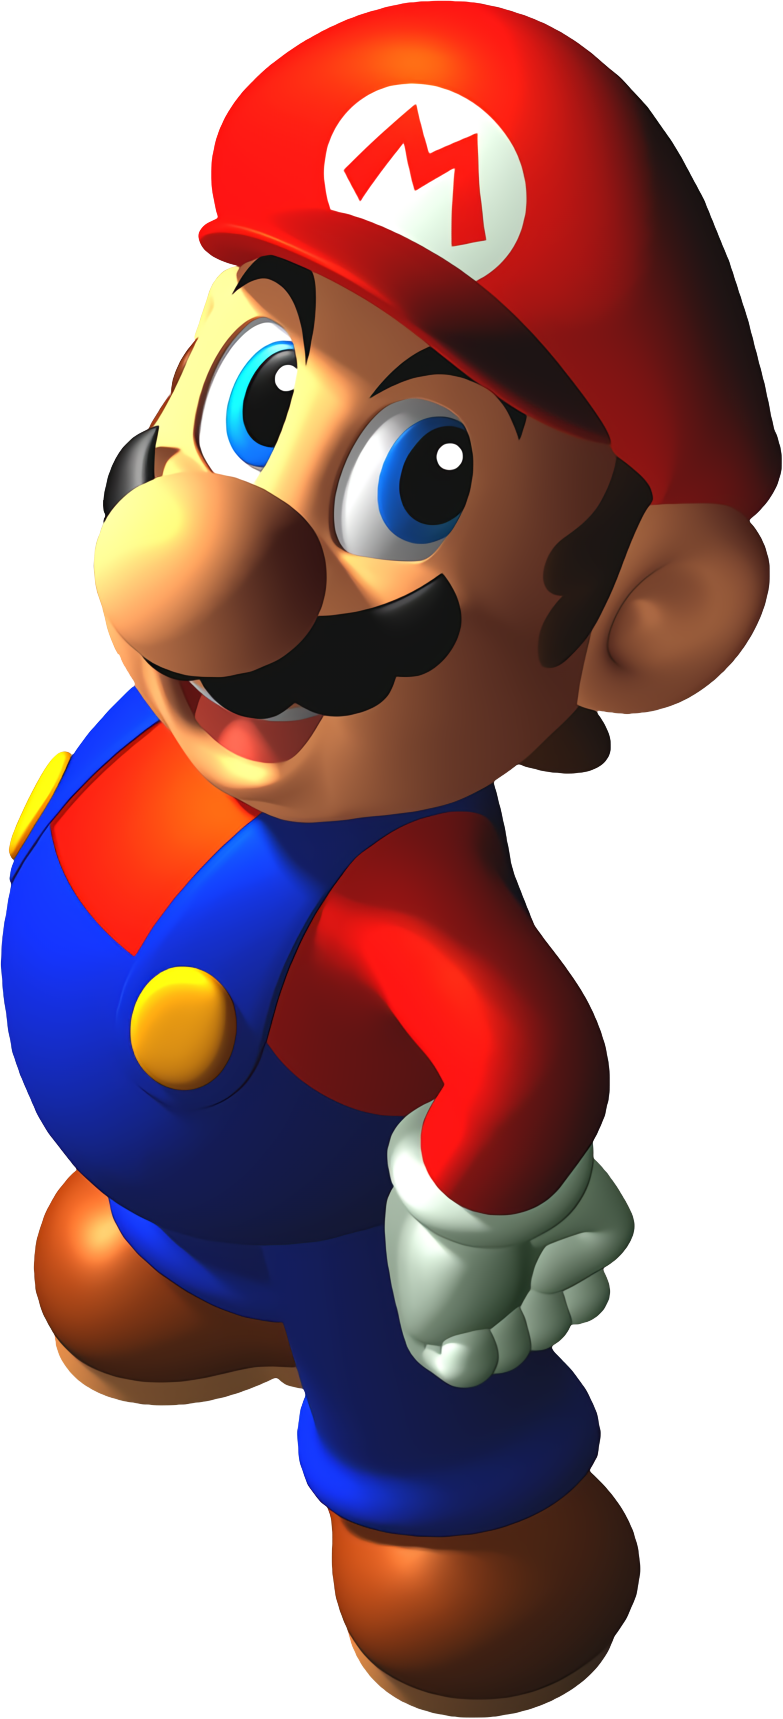 Filemario Smiling Sm64 Artworkpng Super Mario Wiki The Mario Encyclopedia 3010